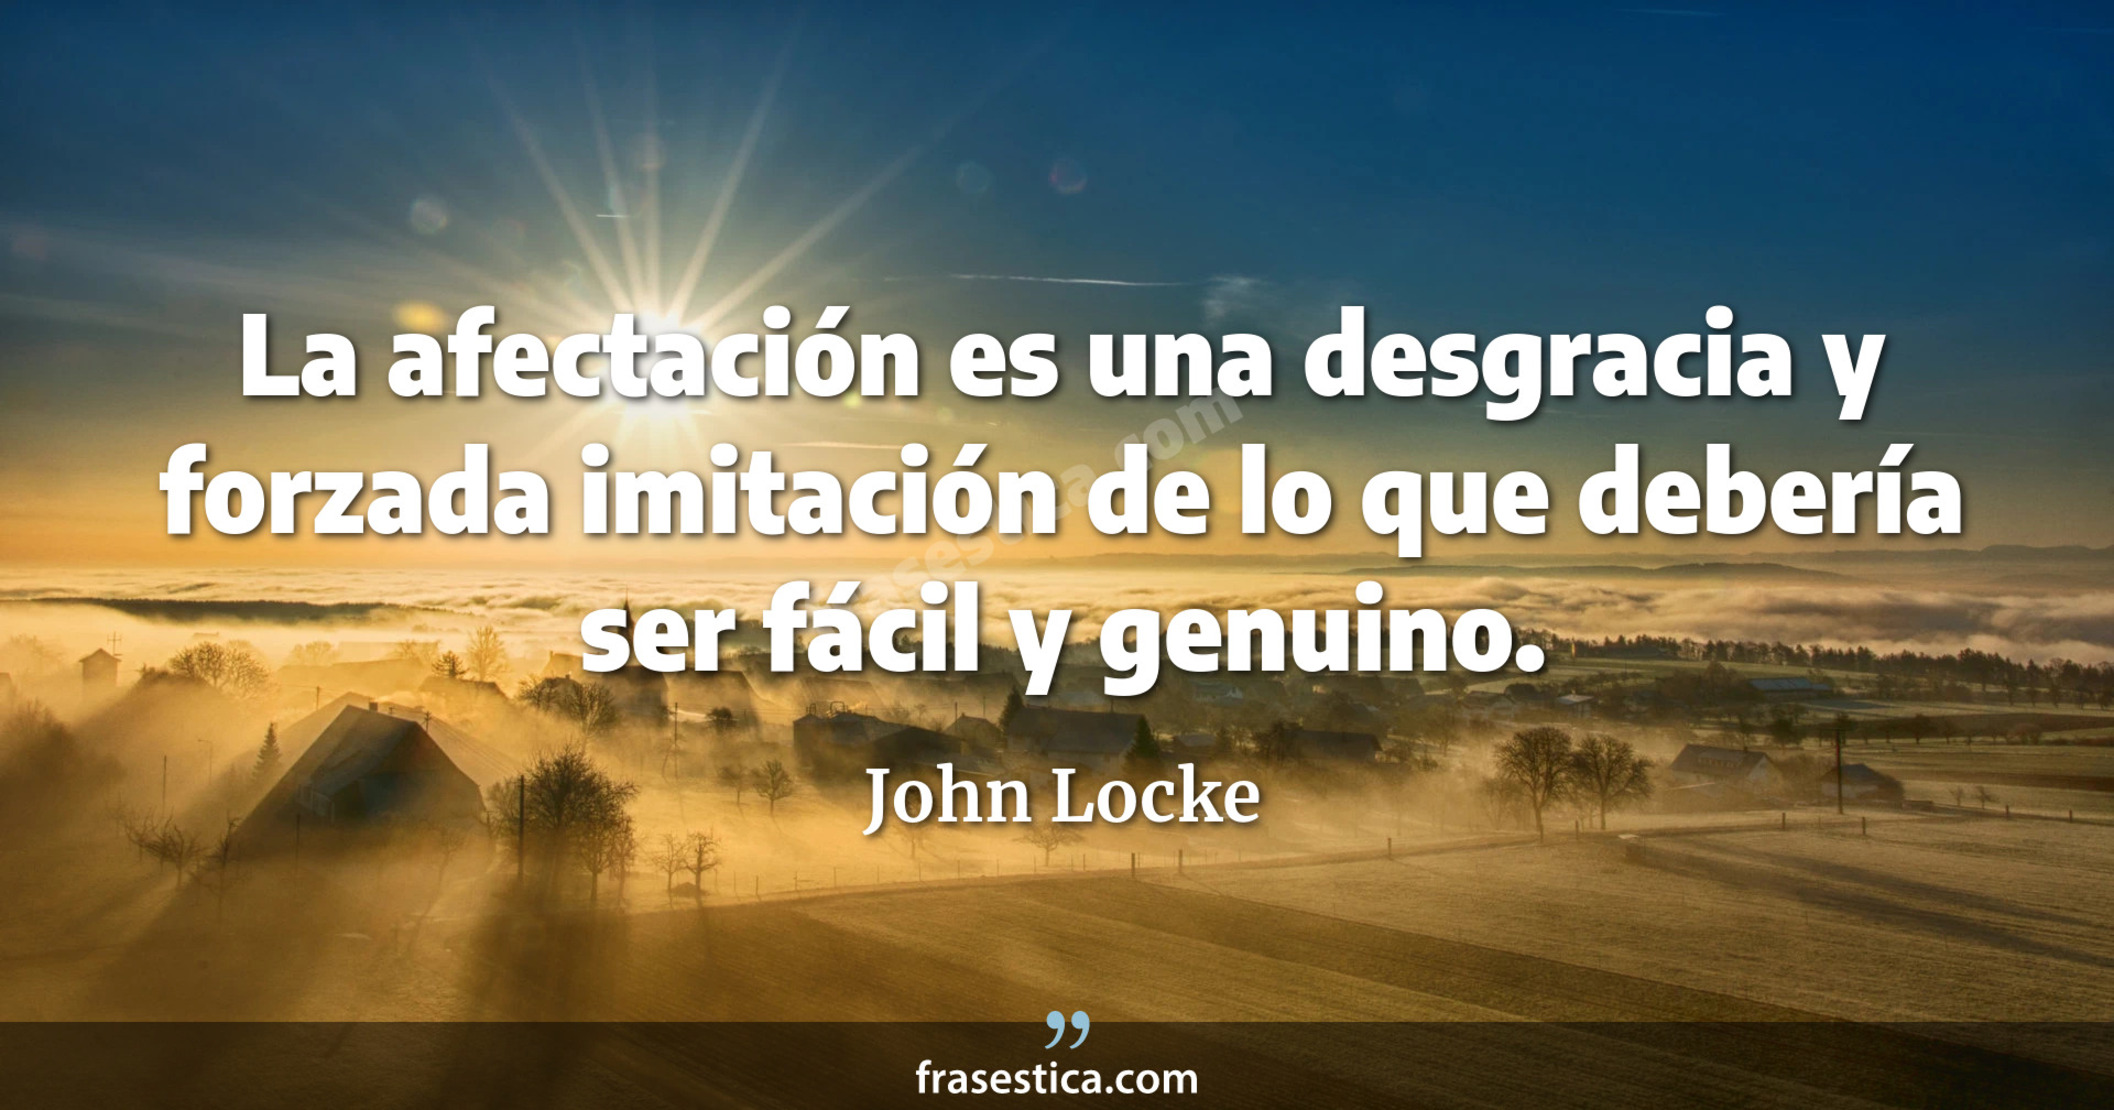 La afectación es una desgracia y forzada imitación de lo que debería ser fácil y genuino. - John Locke